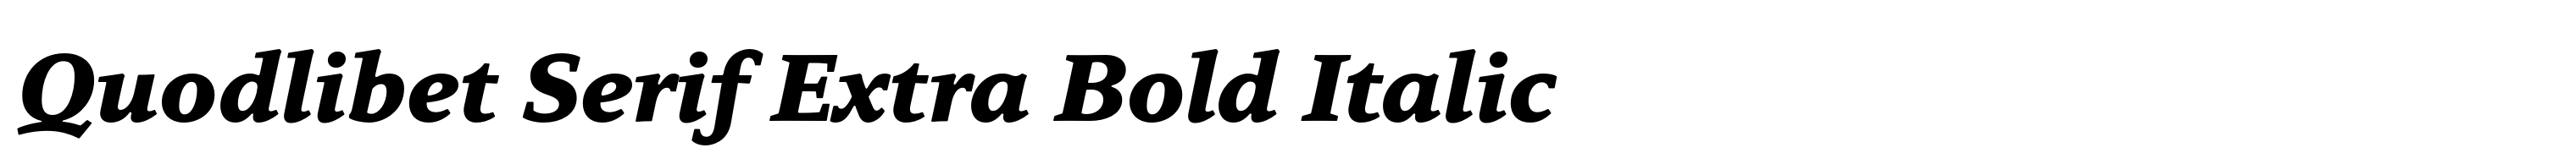 Quodlibet Serif Extra Bold Italic